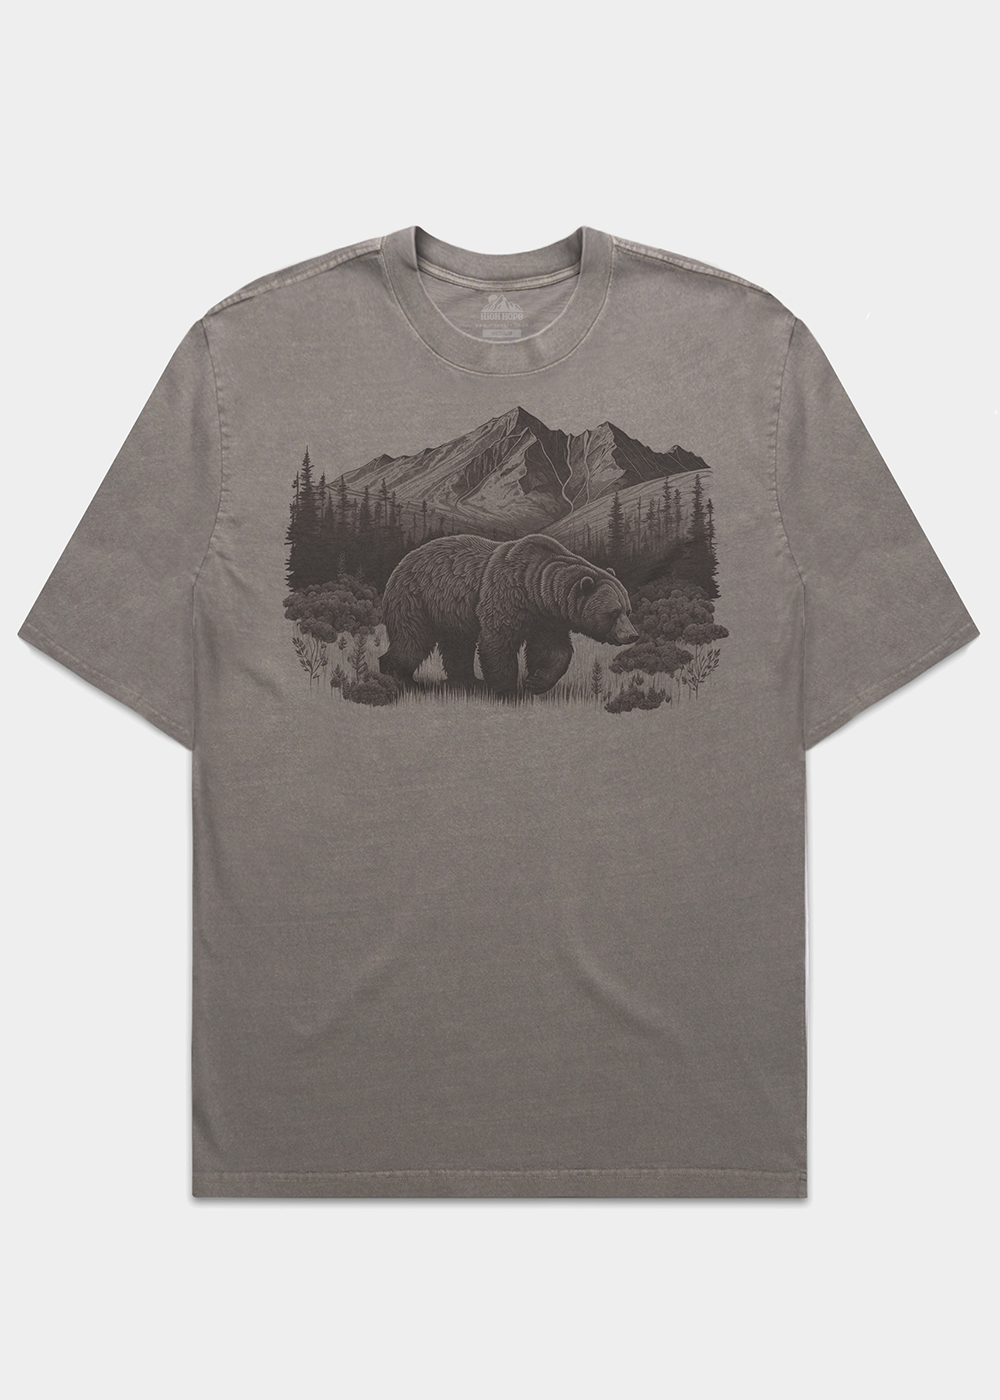 Bear Heavyweight T-shirt / Front Print